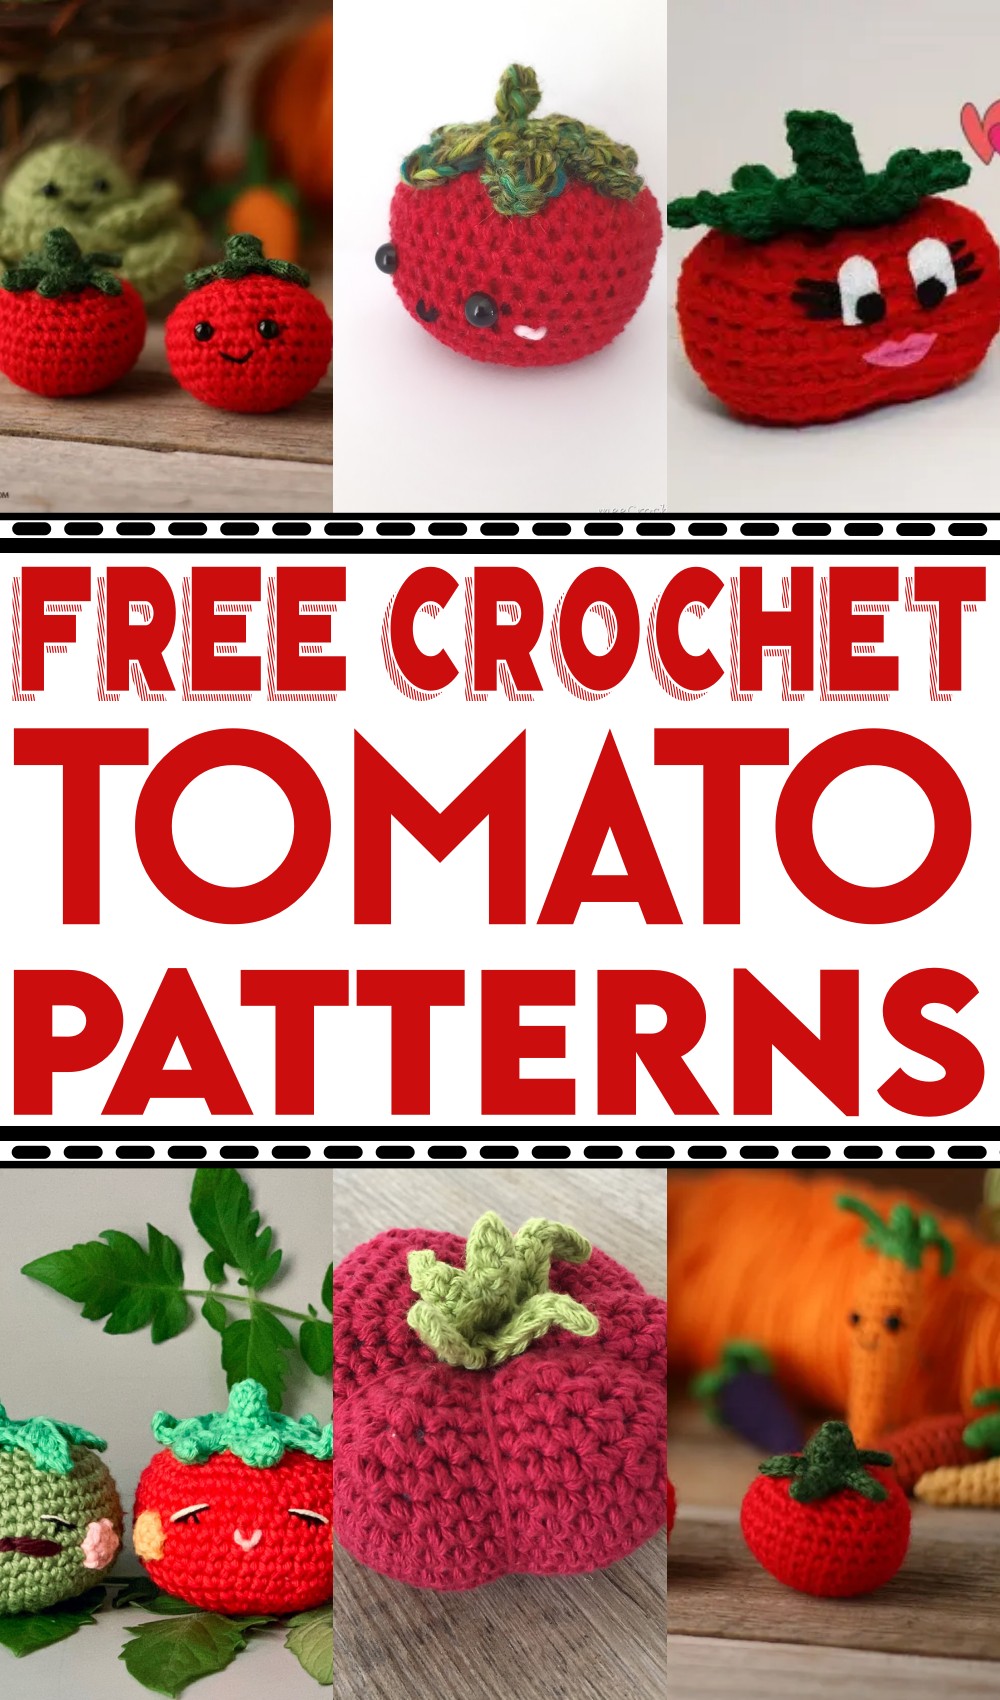 Free Crochet Tomato Patterns